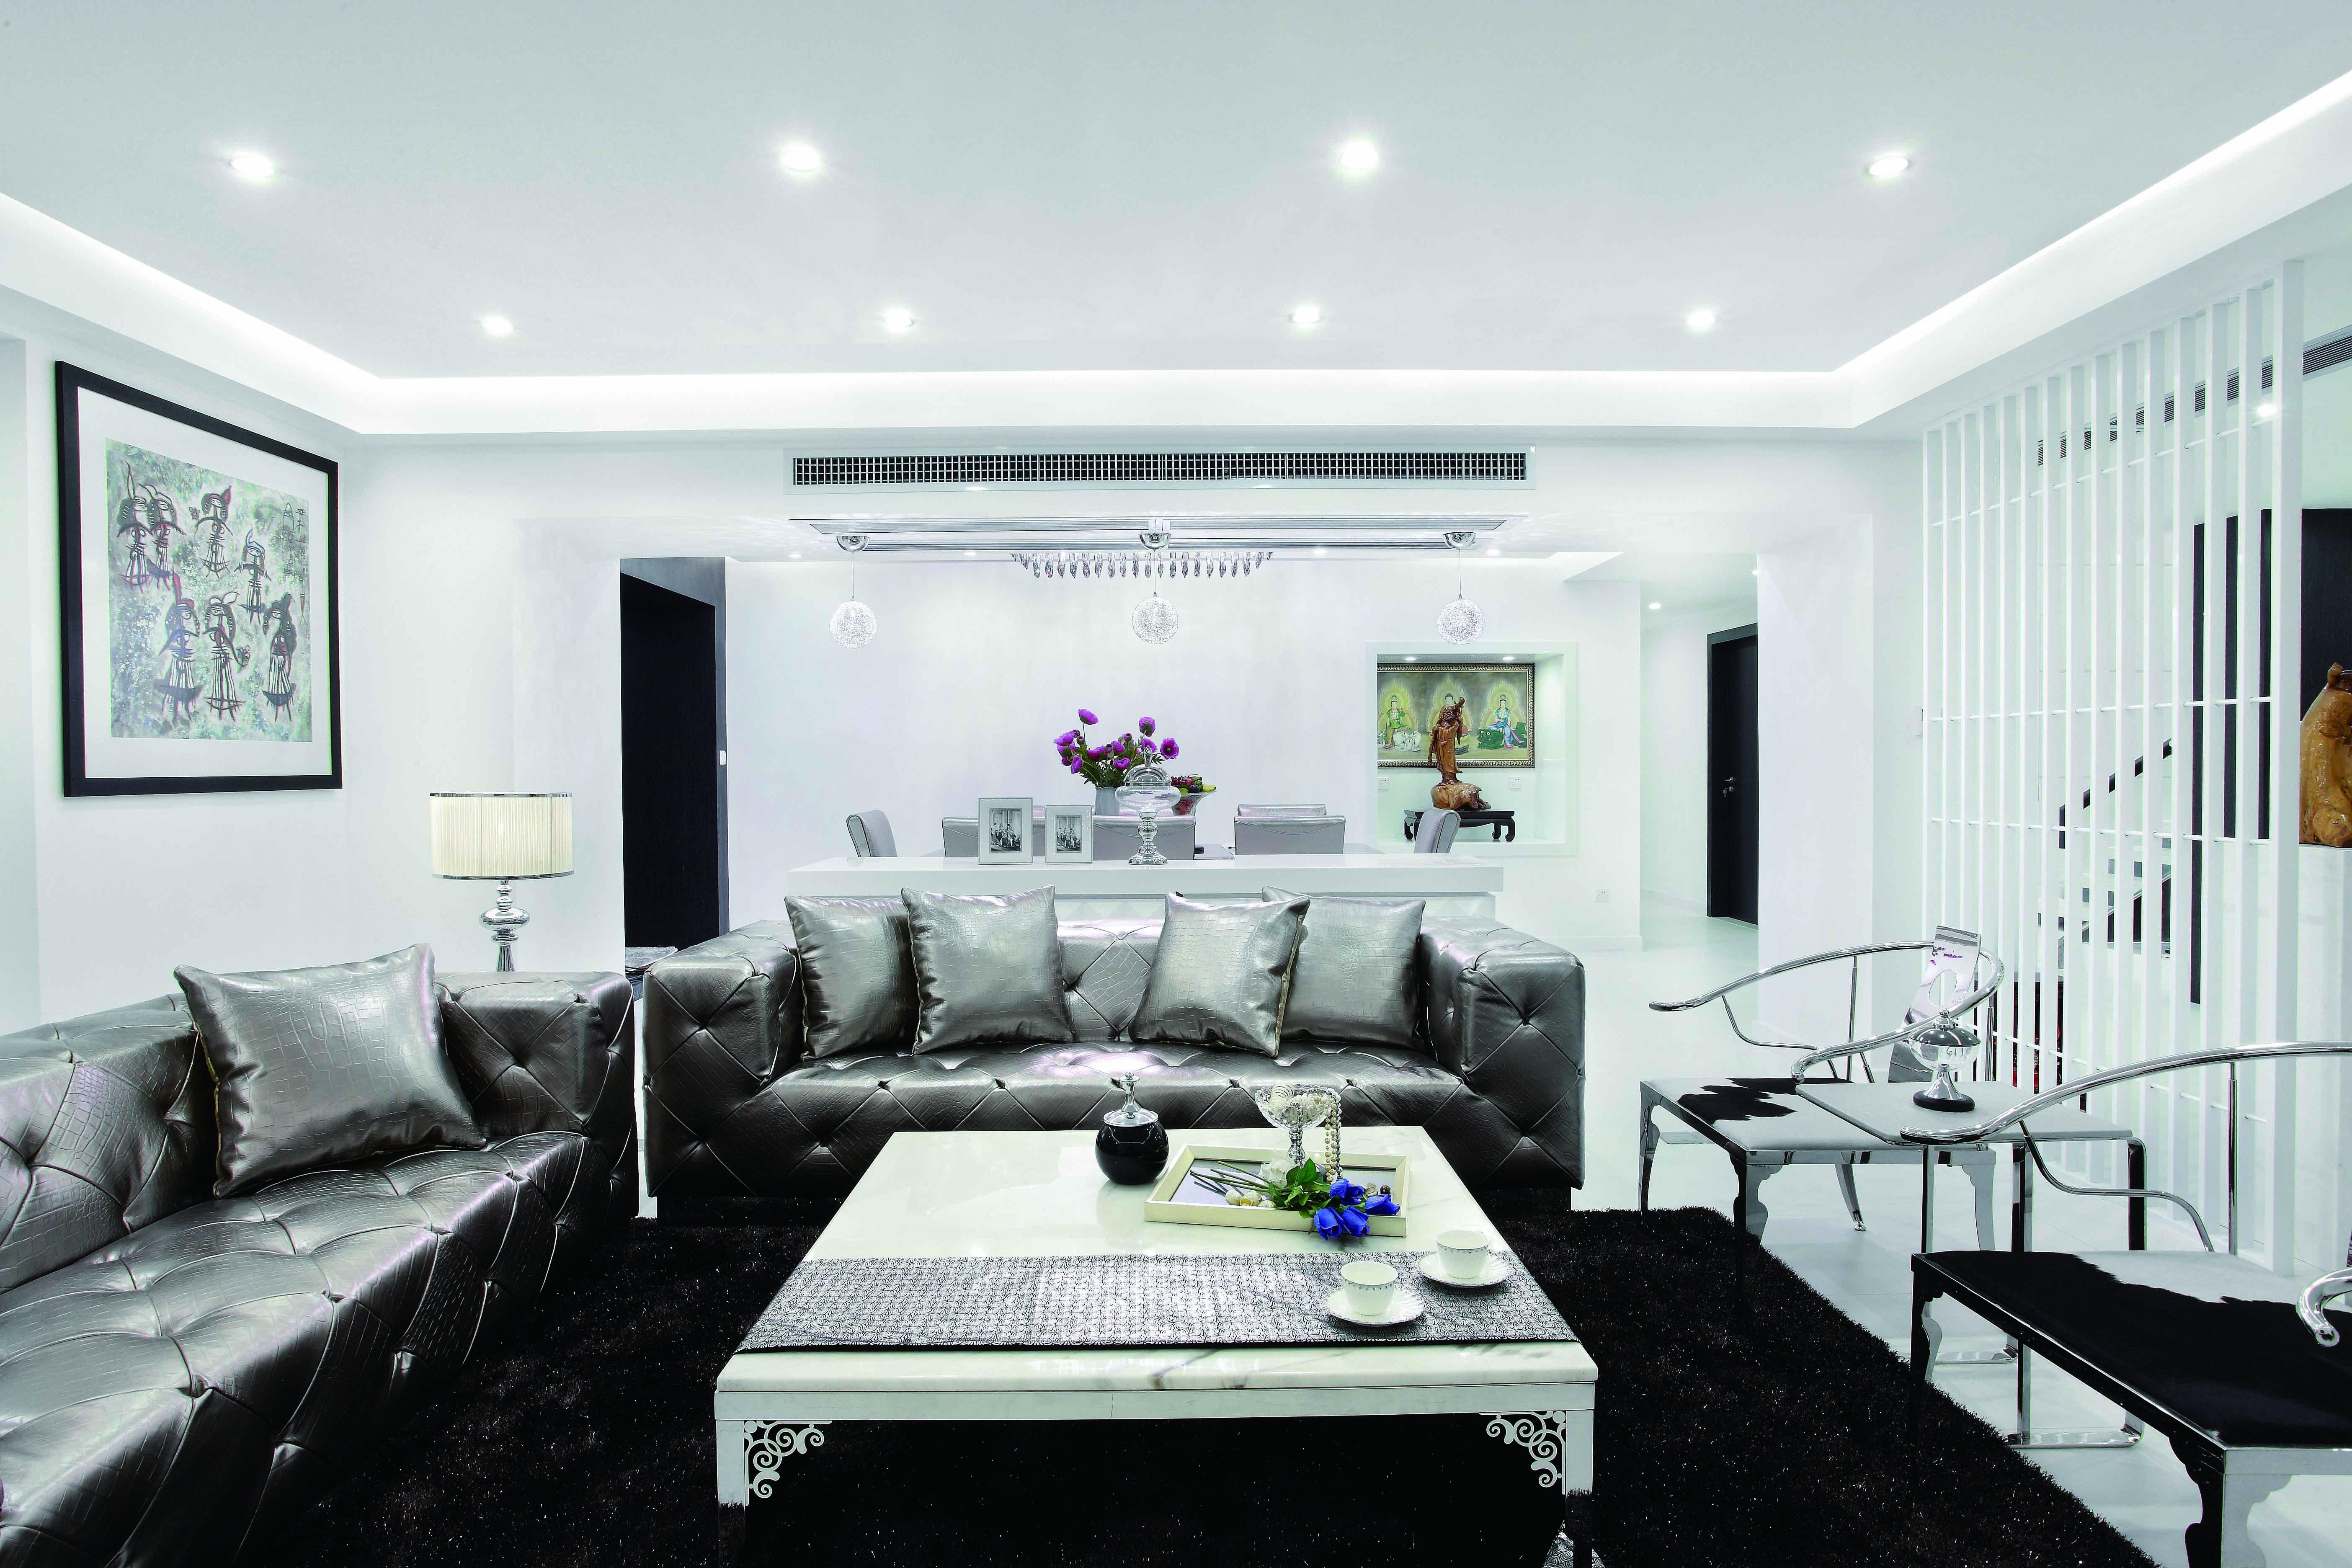 银色的皮质沙发有镜面的效果，在灯光的映衬下熠熠生辉。